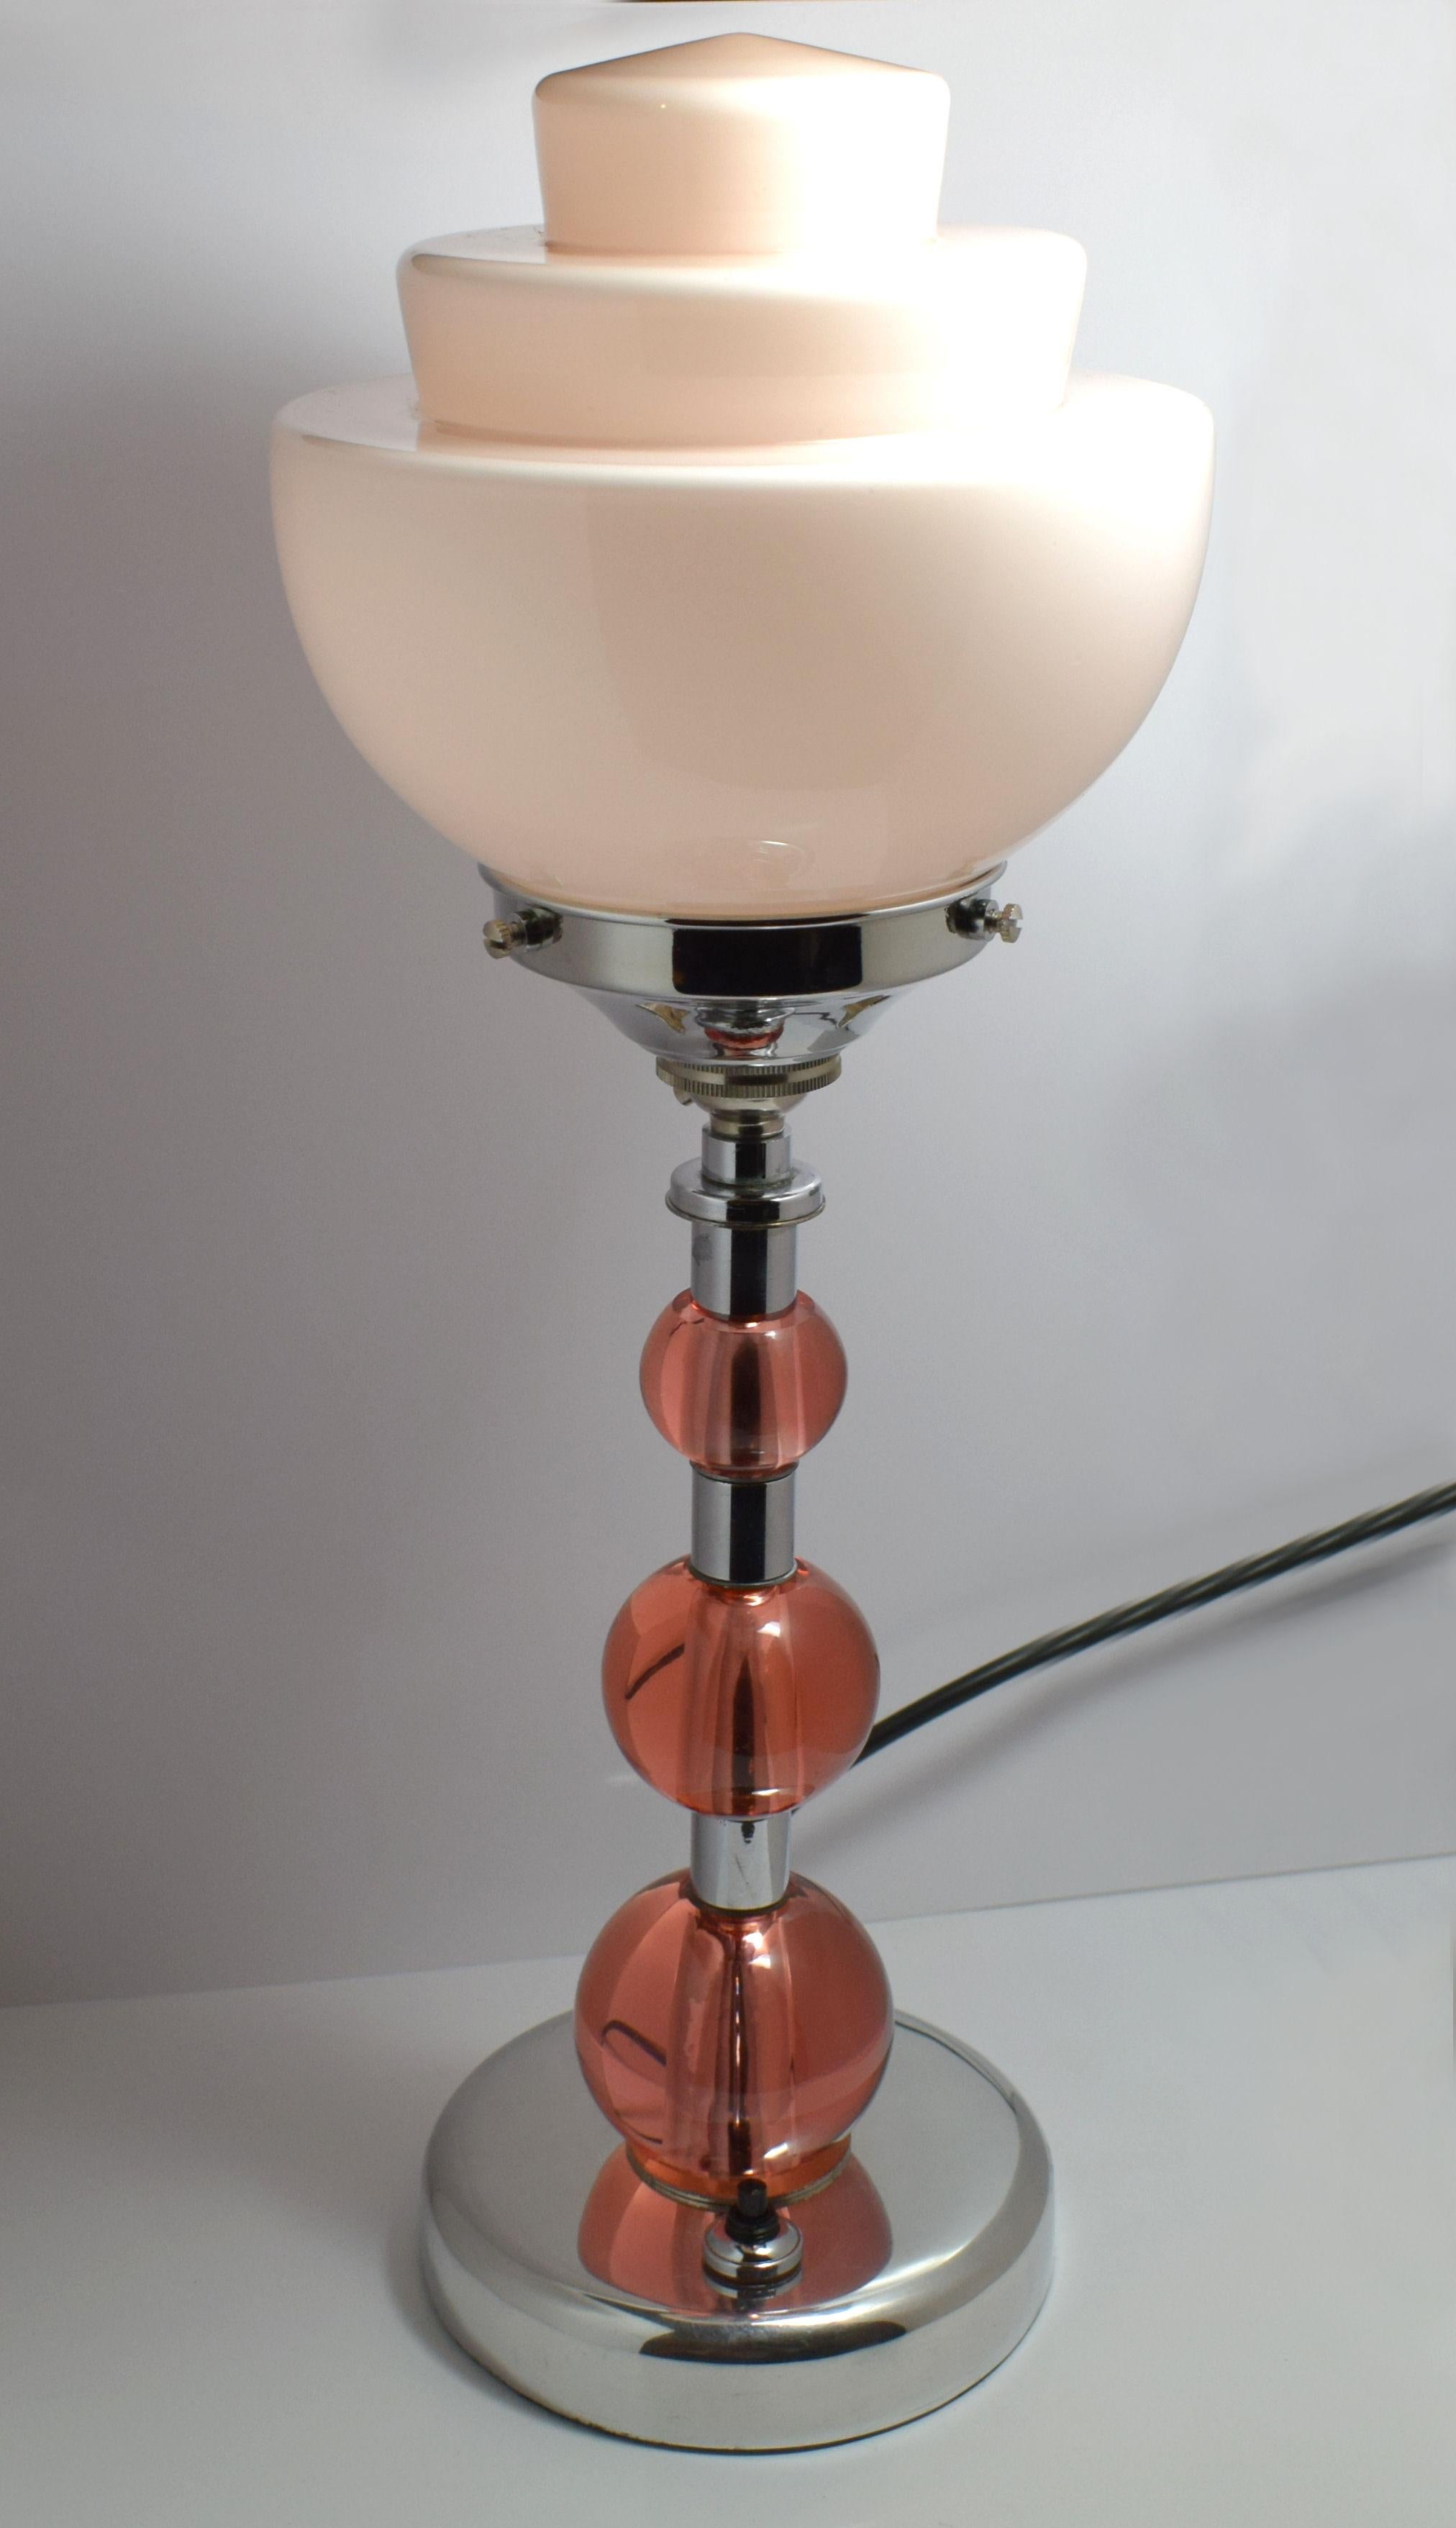 Original Art-Déco-Lampe aus den 1930er Jahren. Diese wunderbare Lampe zeigt drei rosa Glaskugeln in abgestufter Größe auf einer verchromten Säule, Basis und Galerie. Ein zartrosa, dreistufiger Glasschirm vervollständigt diese Lampe perfekt. Der